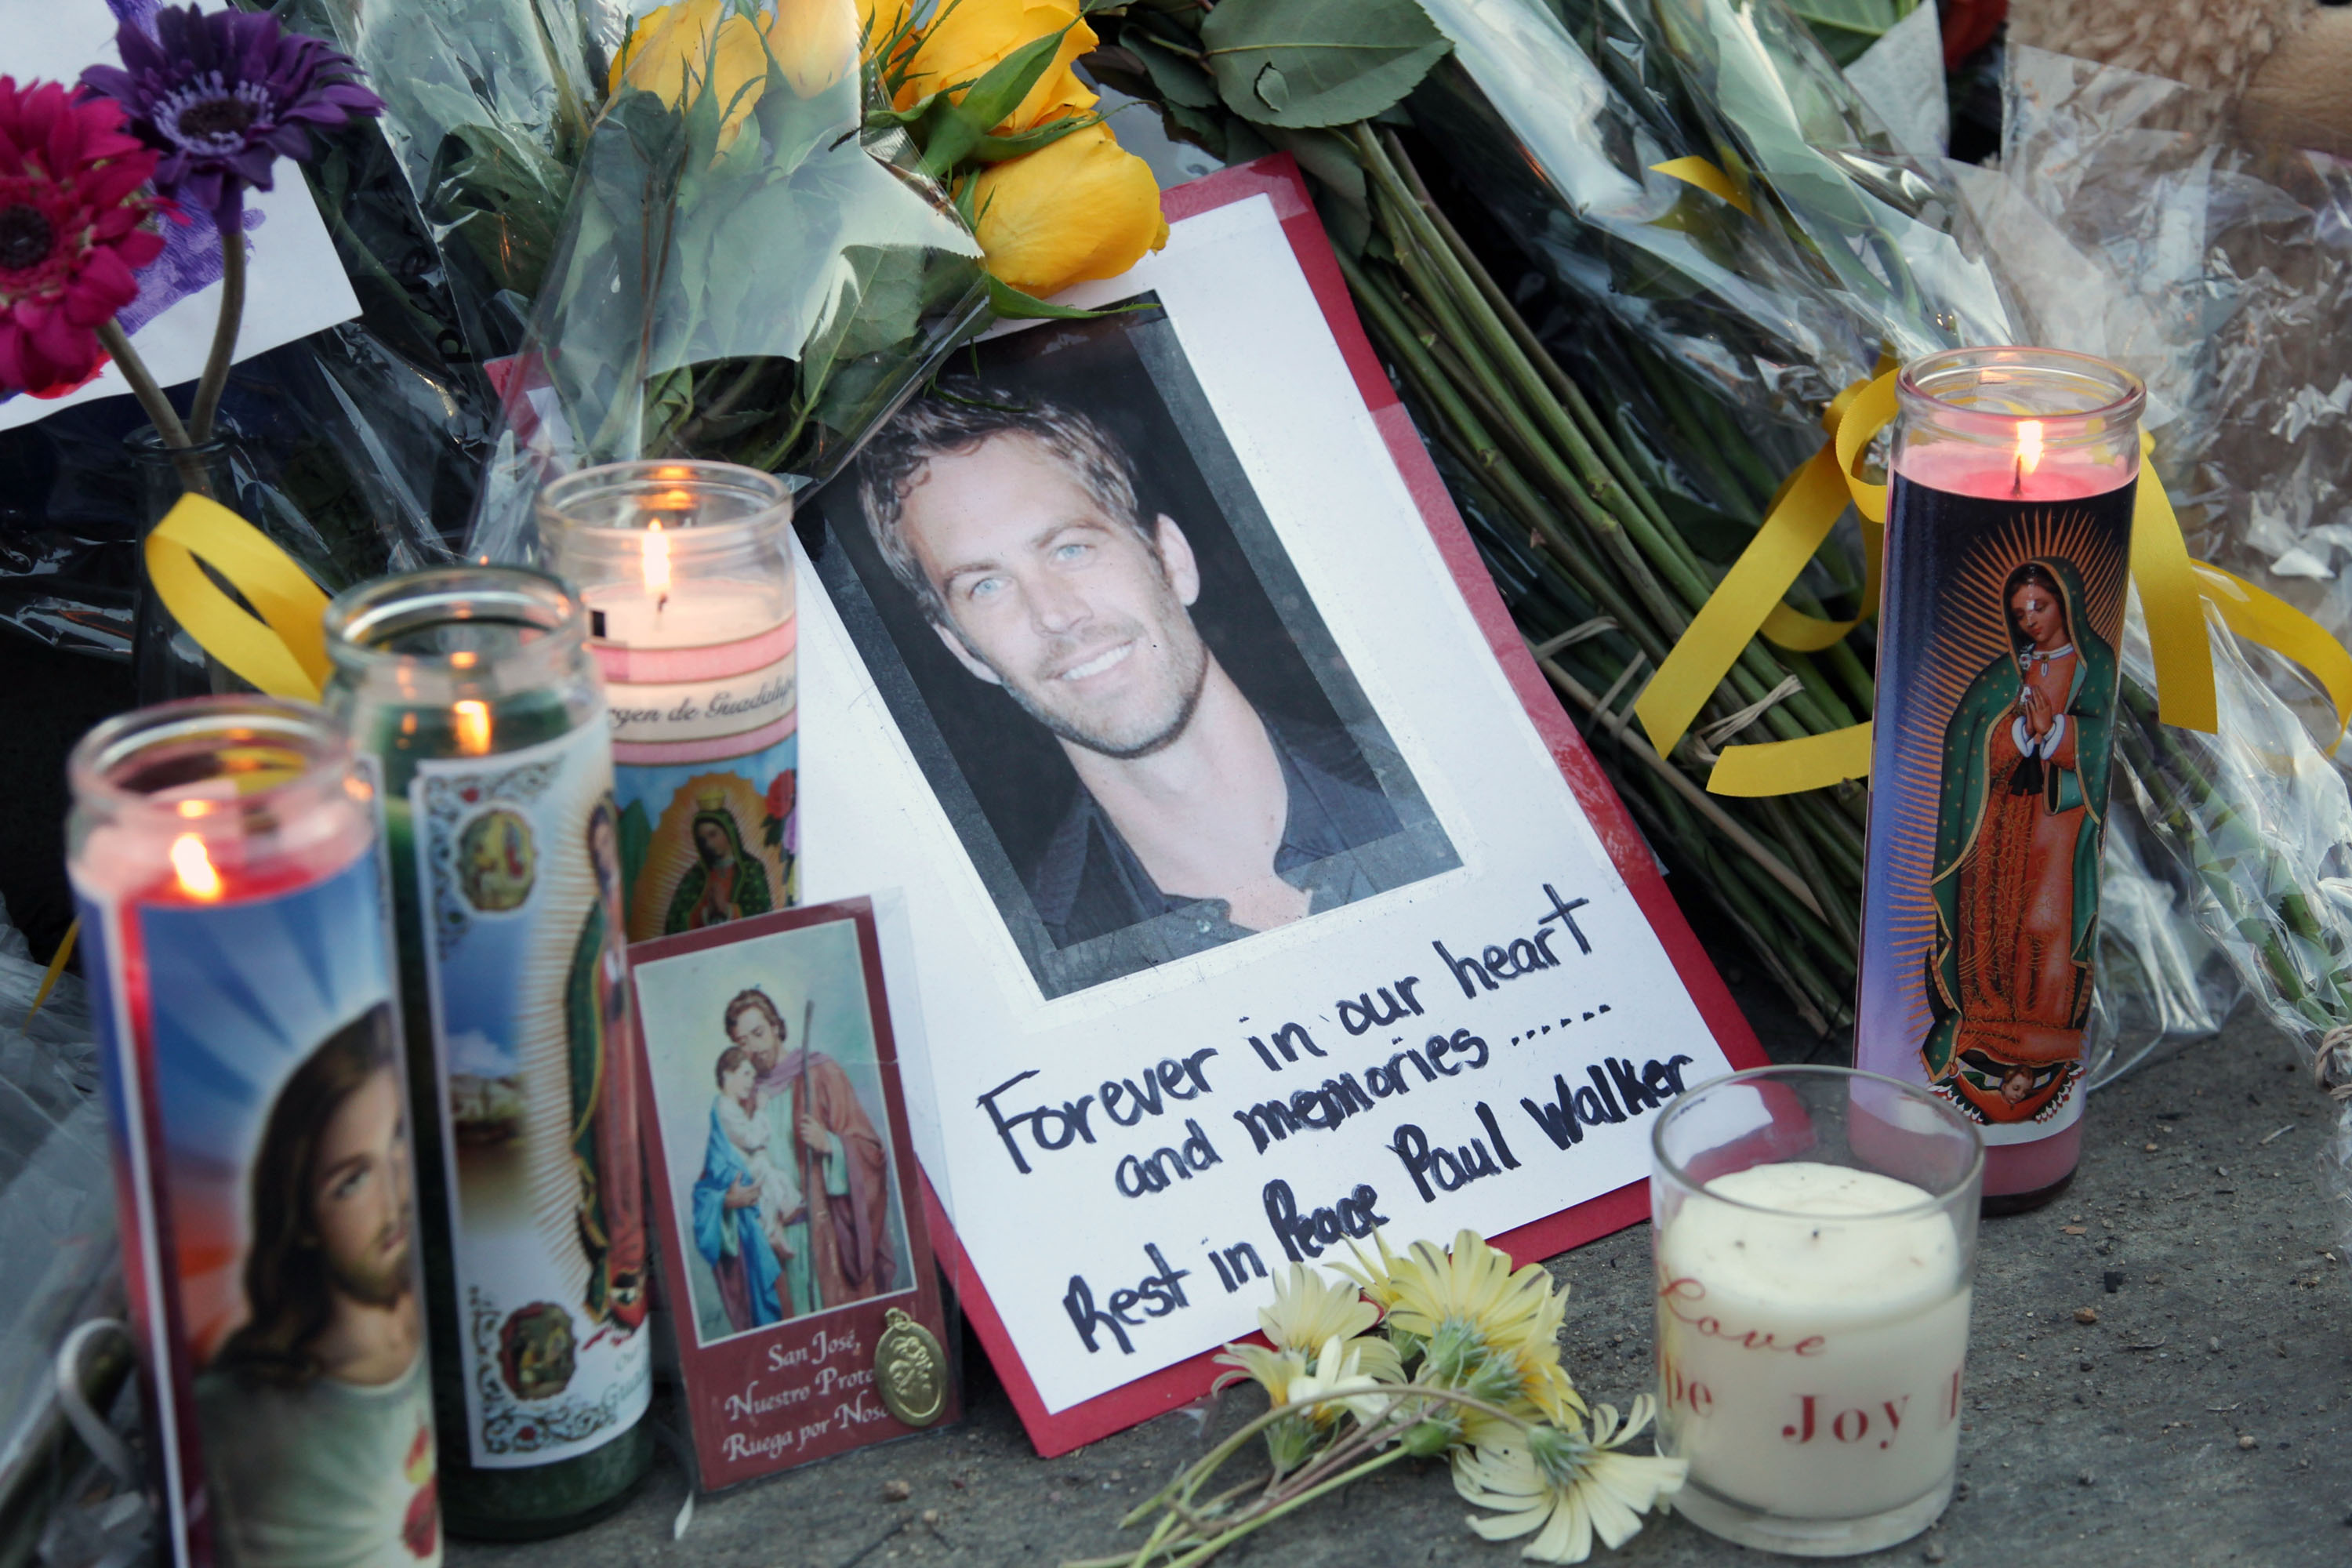 Une vue générale du site commémoratif de Paul Walker, le 1er décembre 2013, à Valencia, en Californie. | Source : Getty Images